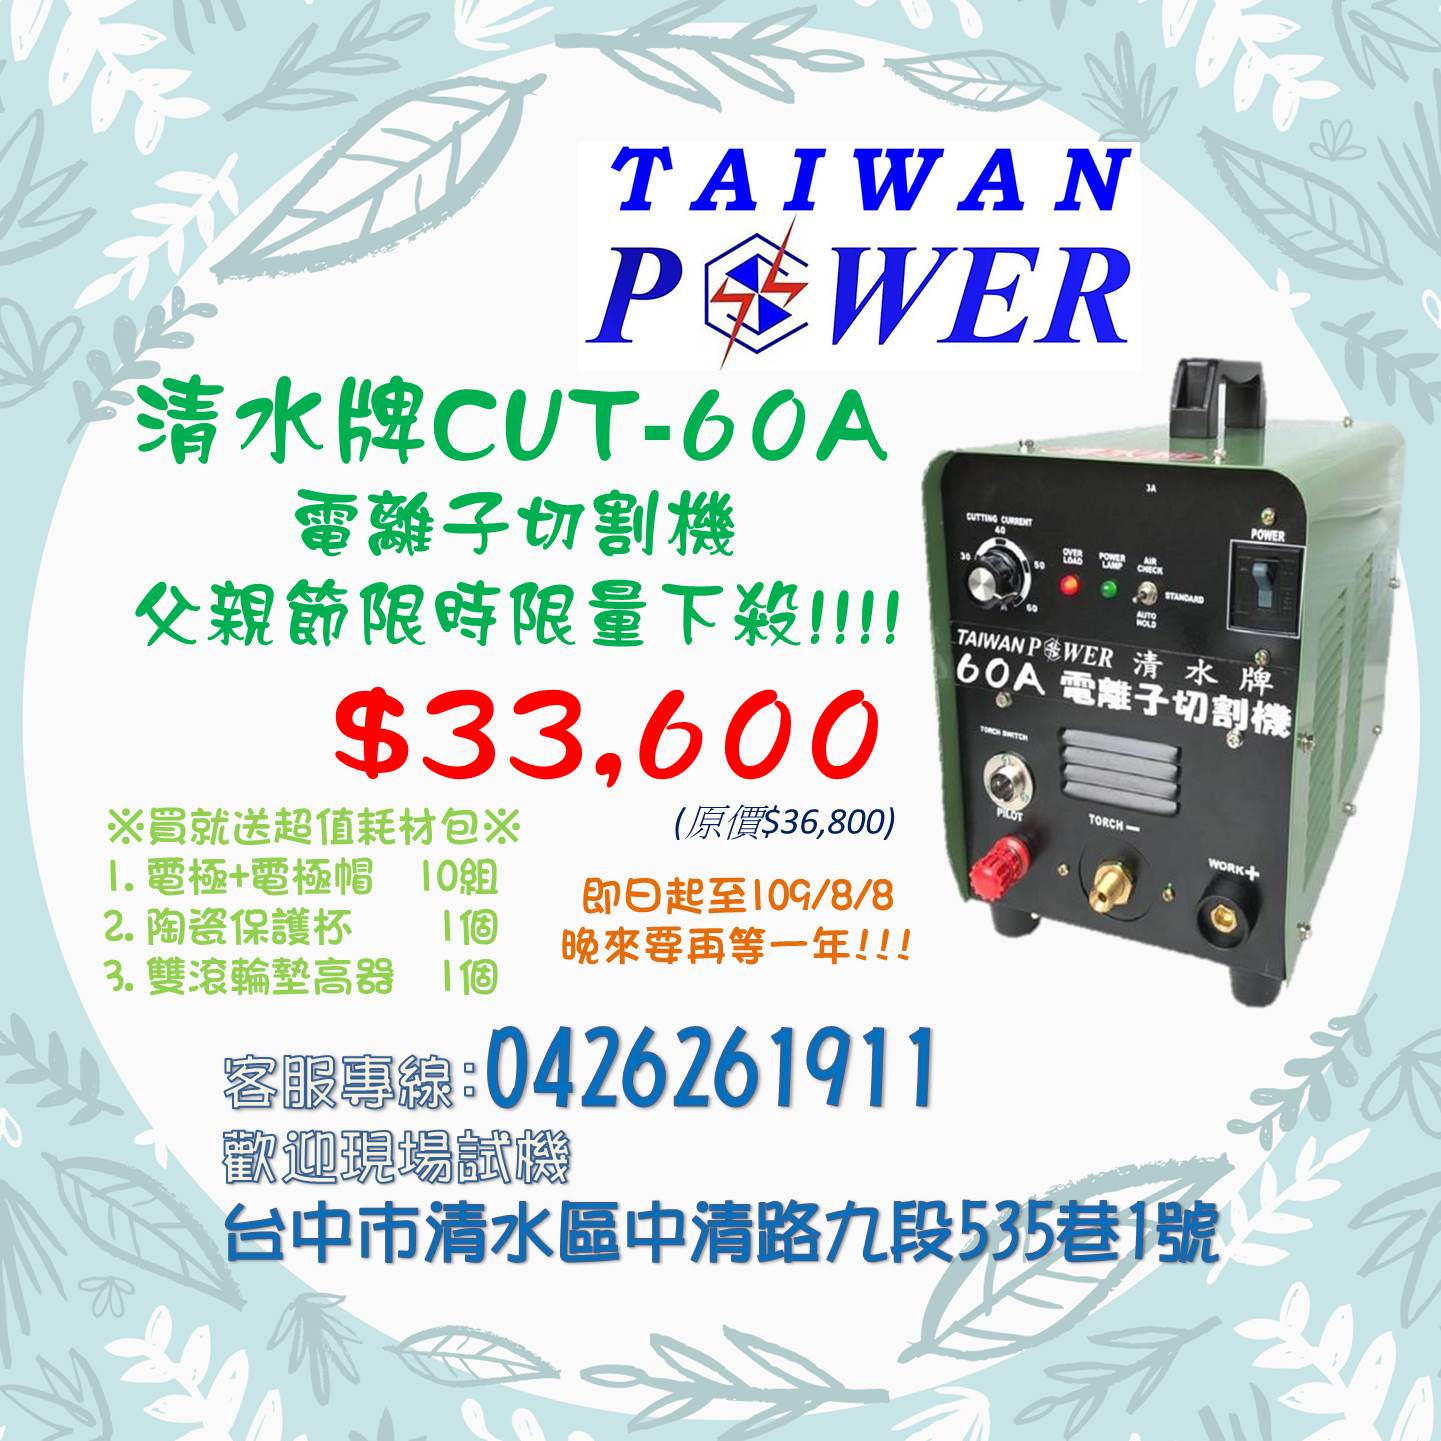 【TAIWAN POWER】清水牌 CUT-60A 電離子空氣切割機 限時下殺33,600元!!!!!!